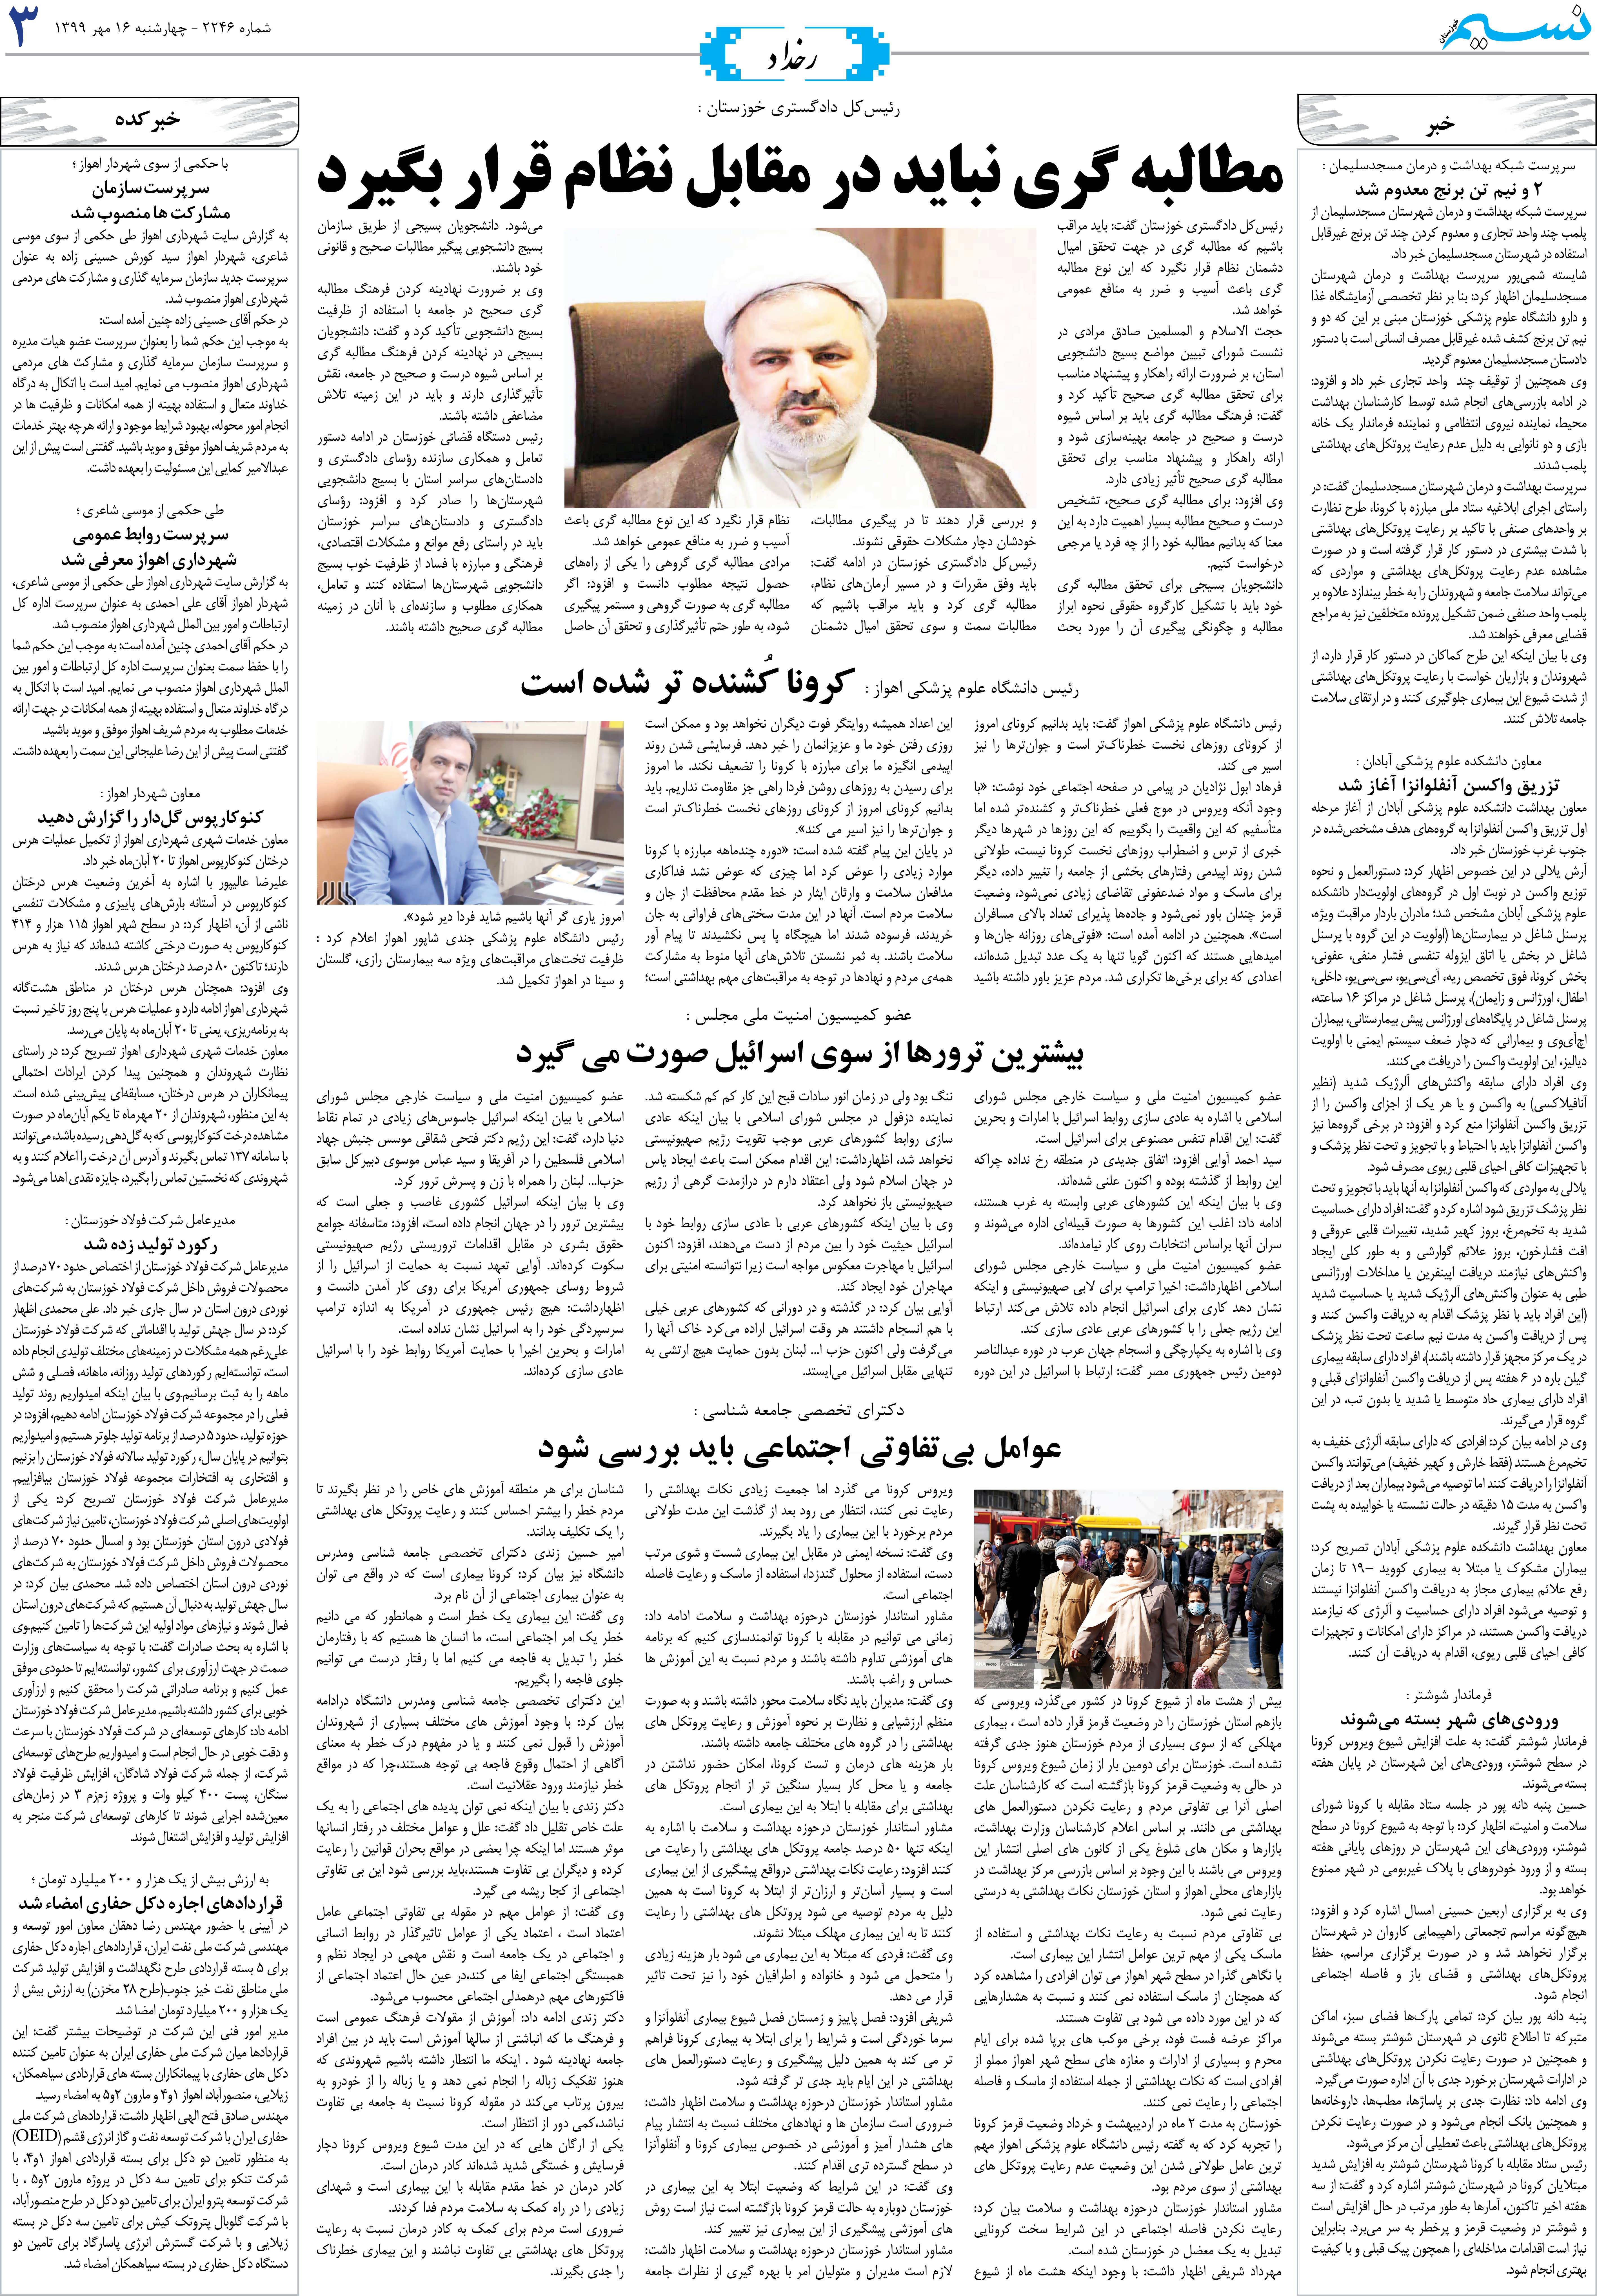 صفحه رخداد روزنامه نسیم شماره 2246